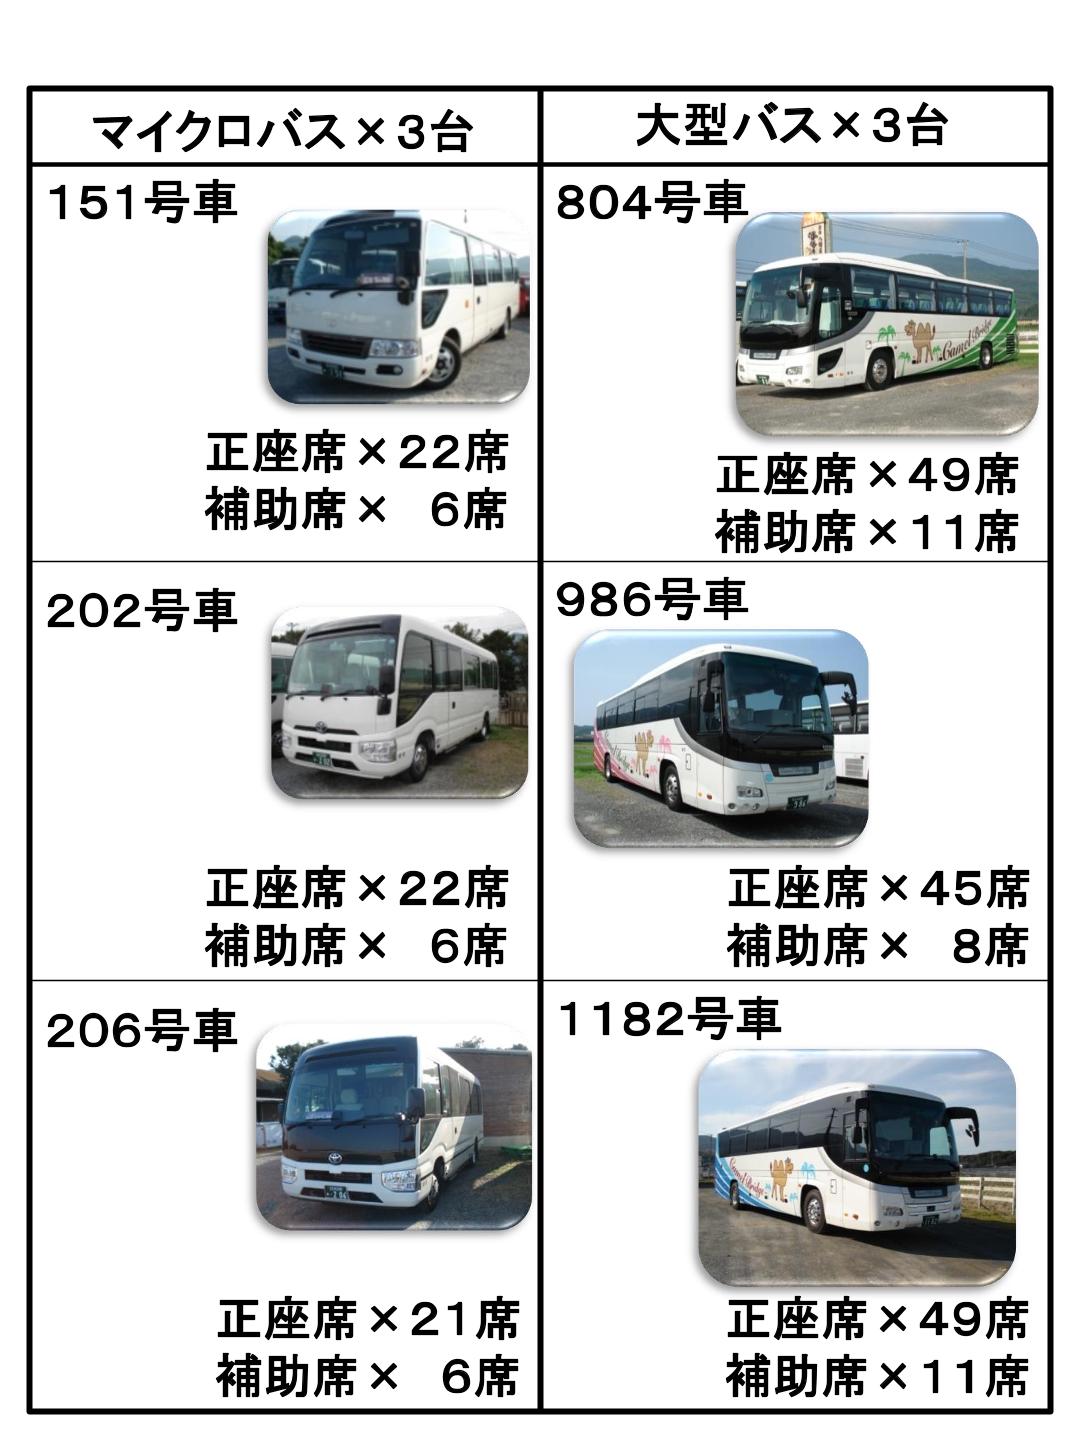 バスの種類